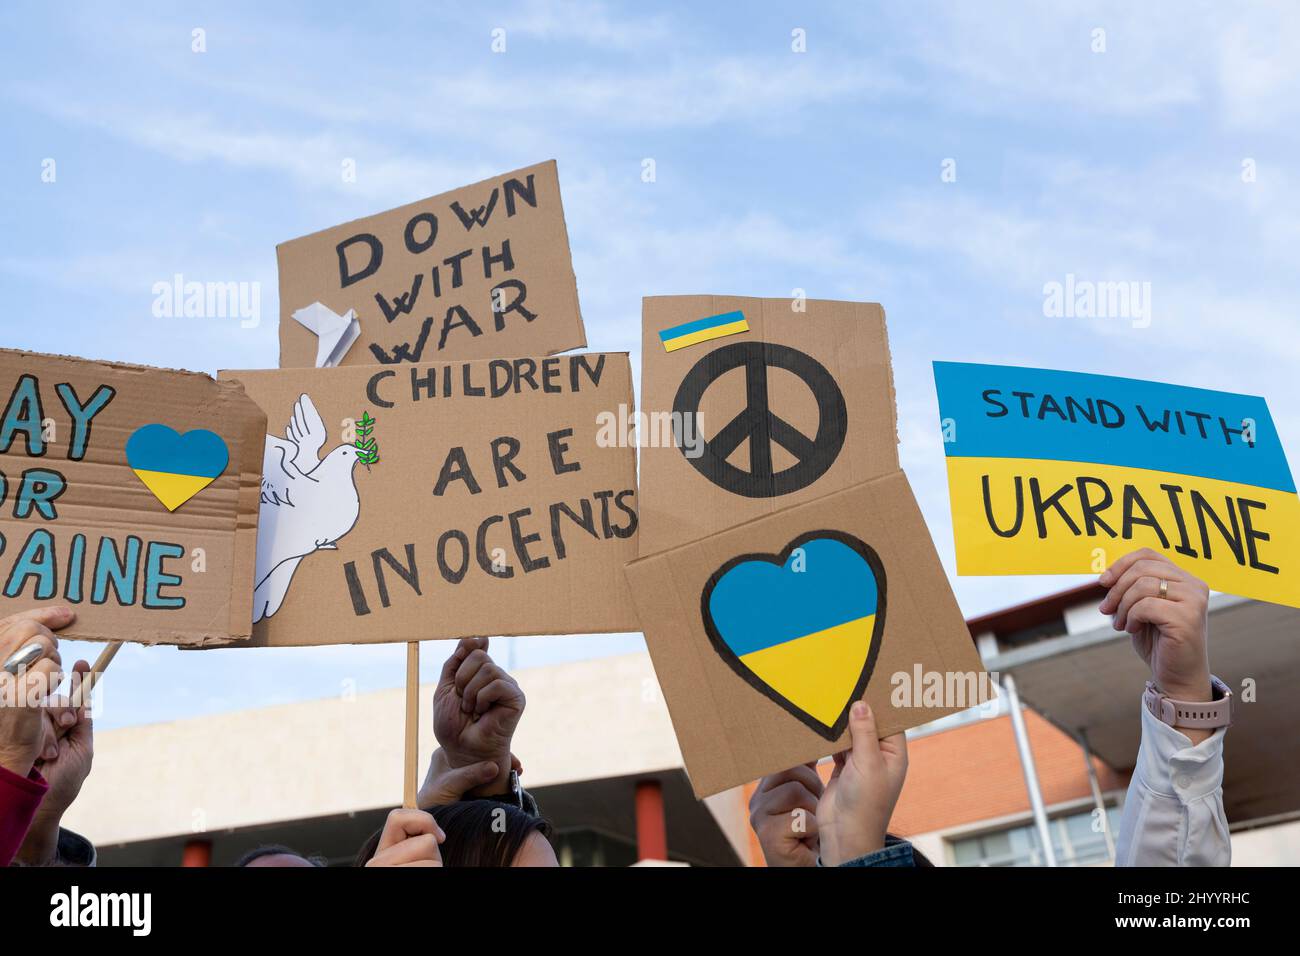 Différentes bannières lors de la manifestation de protestation contre l'invasion russe. Signe de paix, pas de guerre, et messages de solidarité et de soutien au Royaume-Uni Banque D'Images